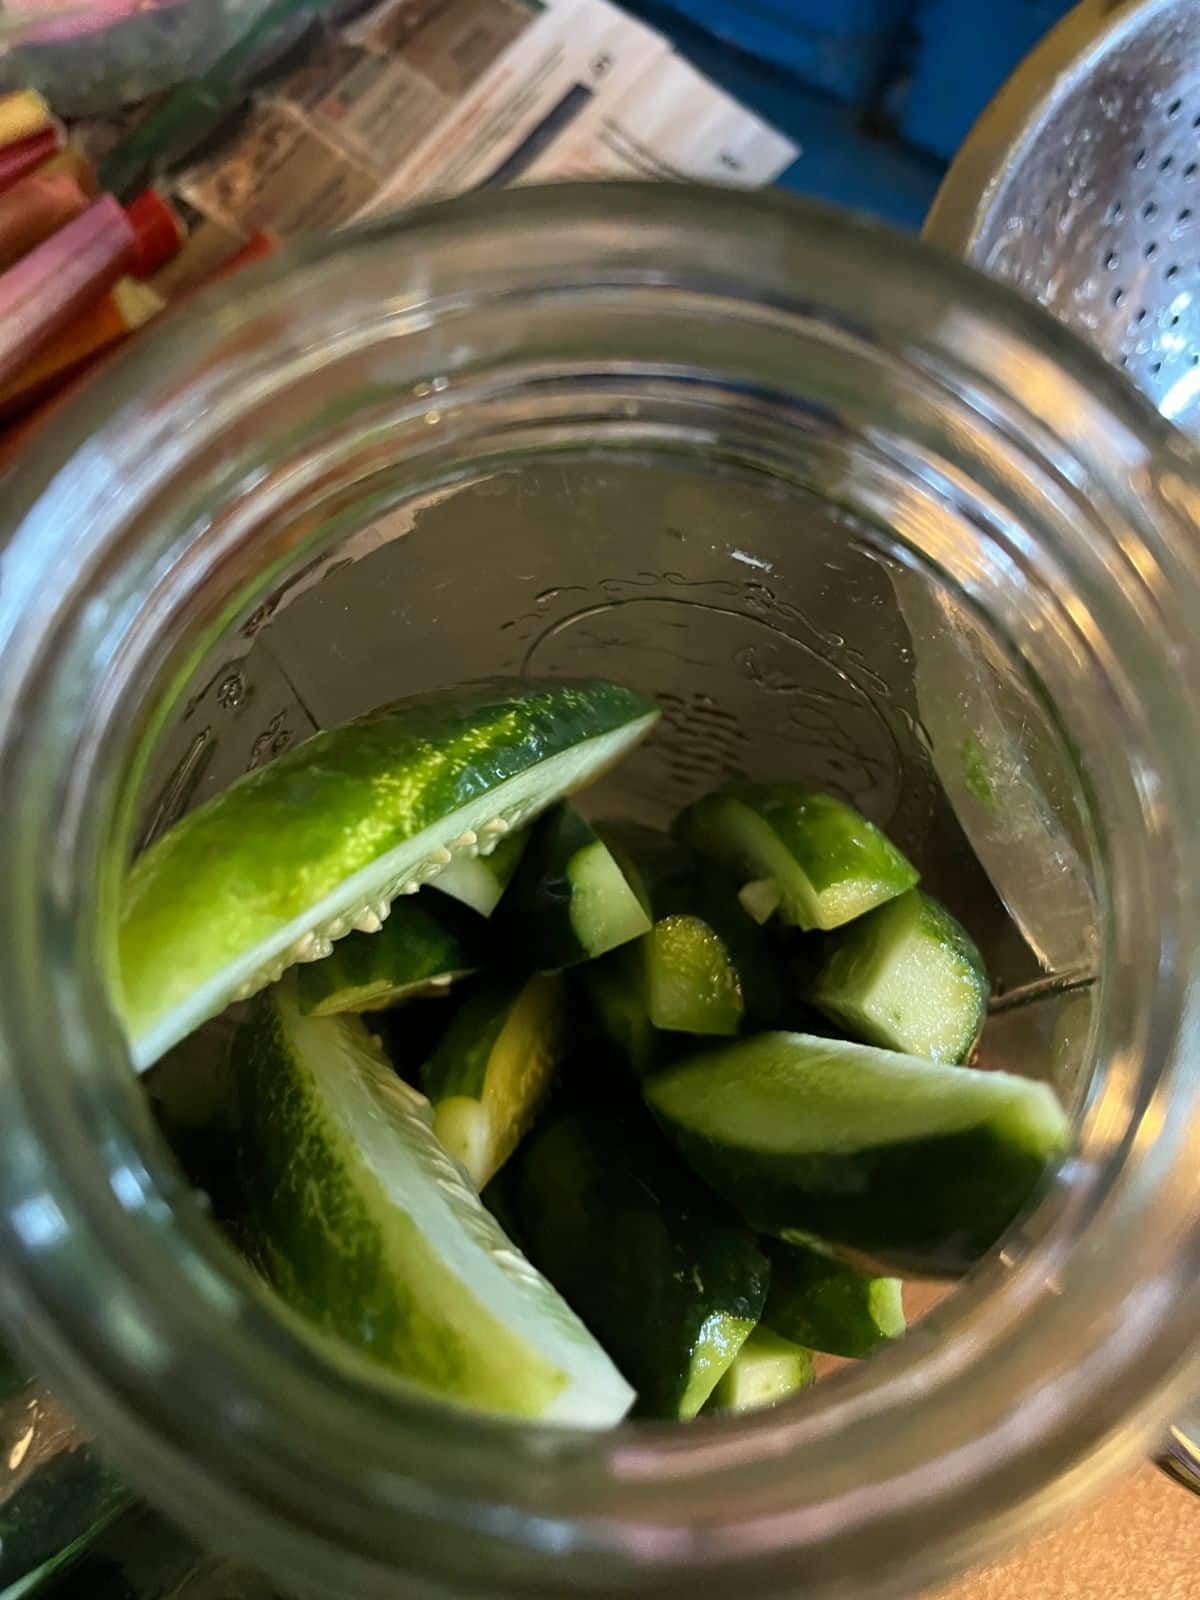 Cucumbers in a pickling jar